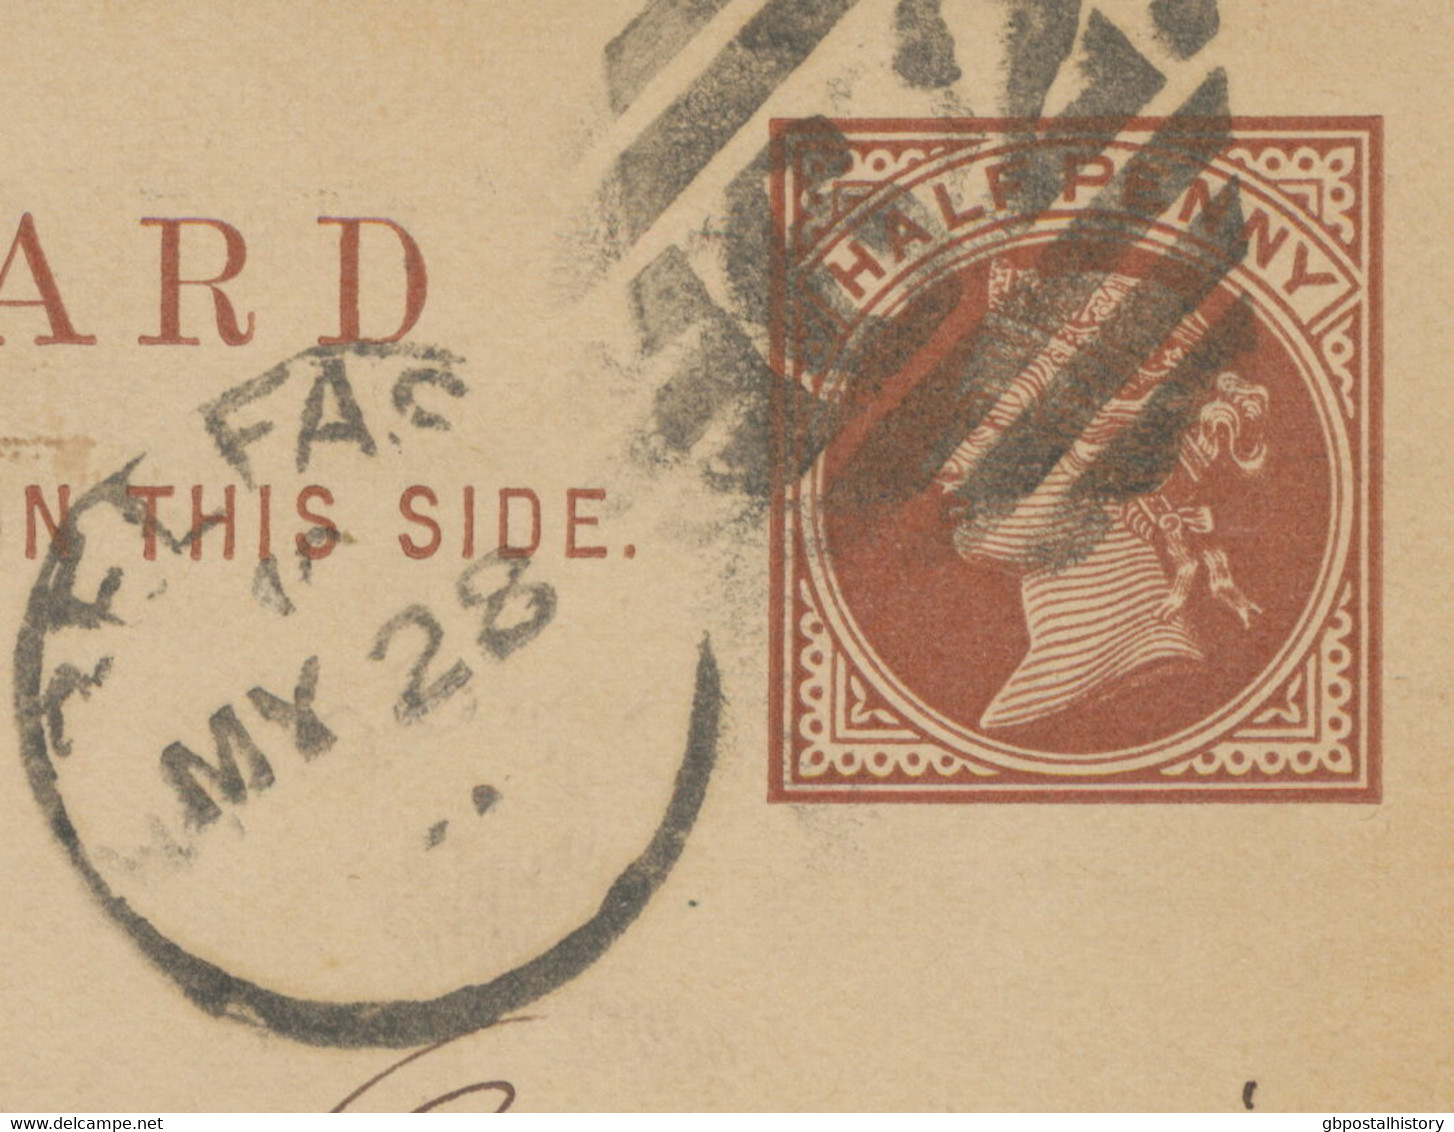 GB „62 / BELFAST“ IRISH Duplex Postcard Uprated With ½ D Jubilee To BERN 1891 - Irlanda Del Nord